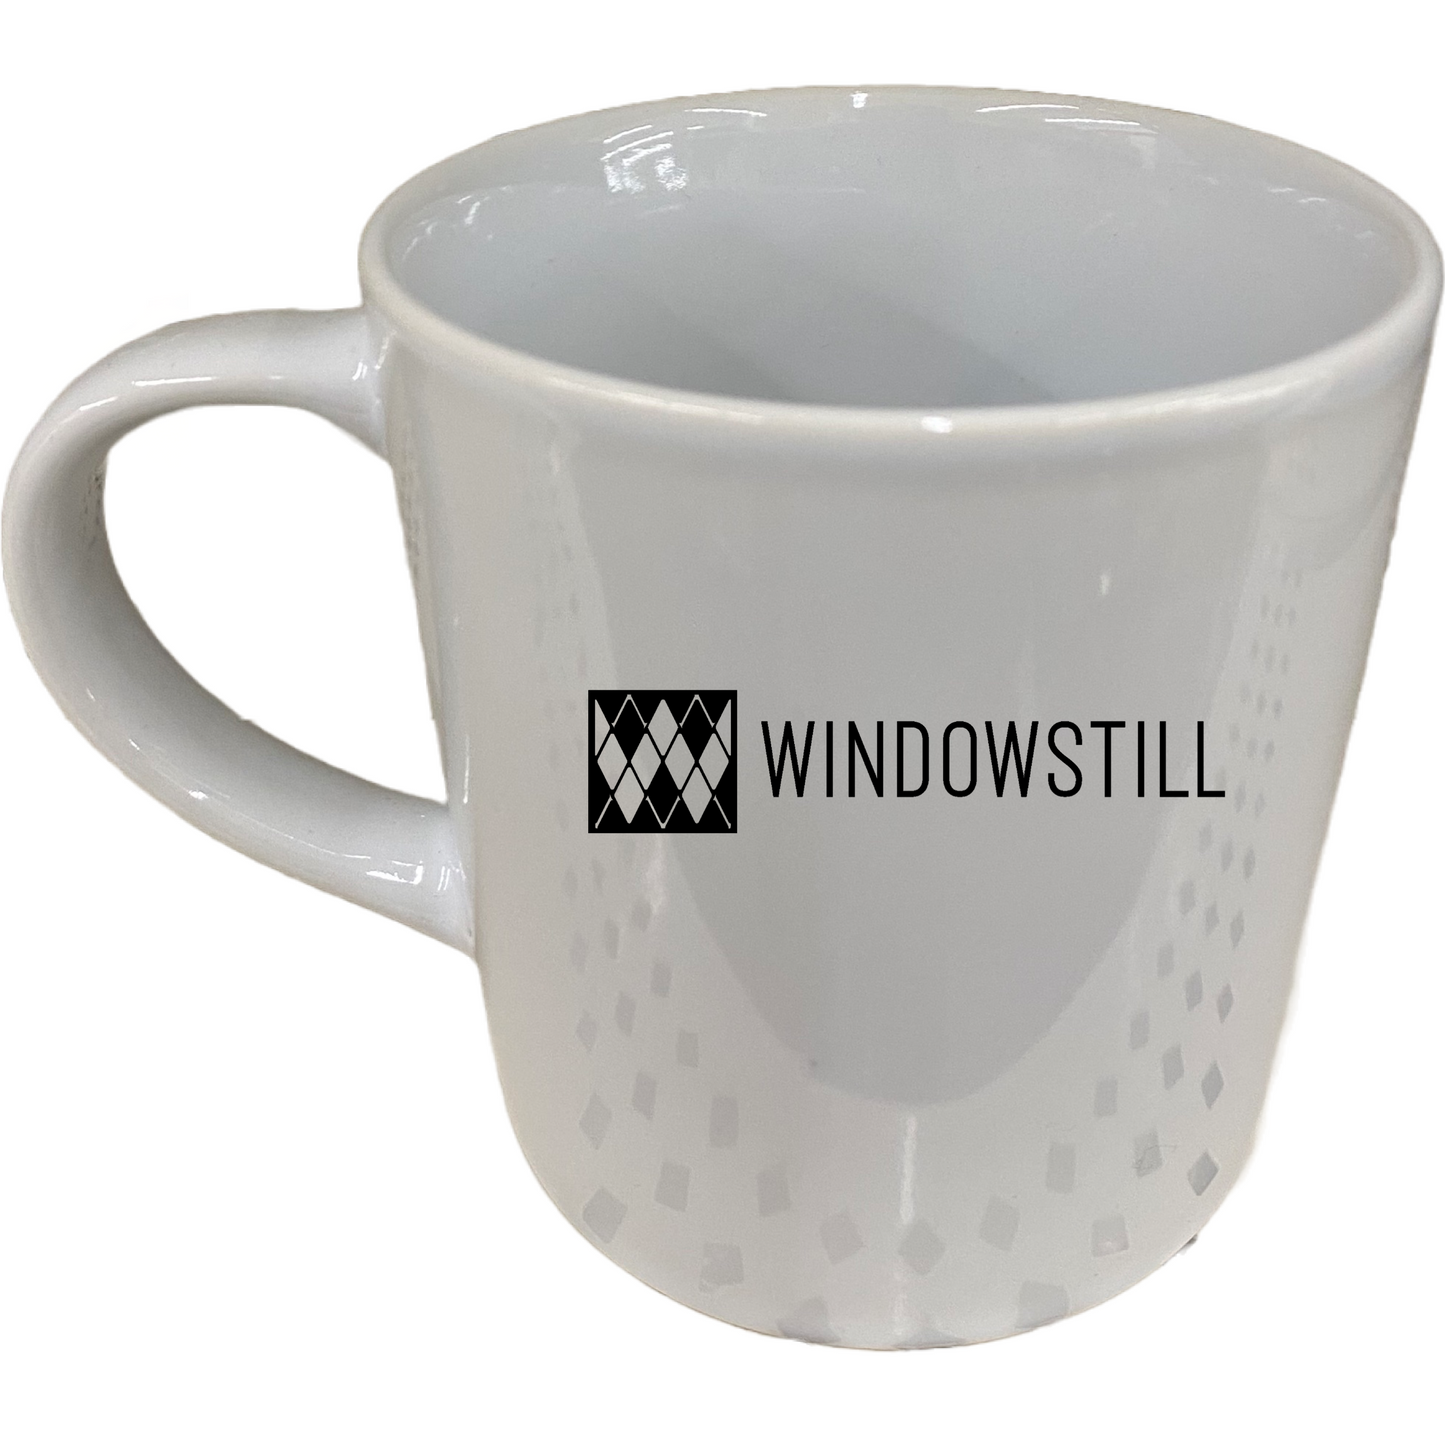 WindowStill Ceramic Mug 17.8oz.